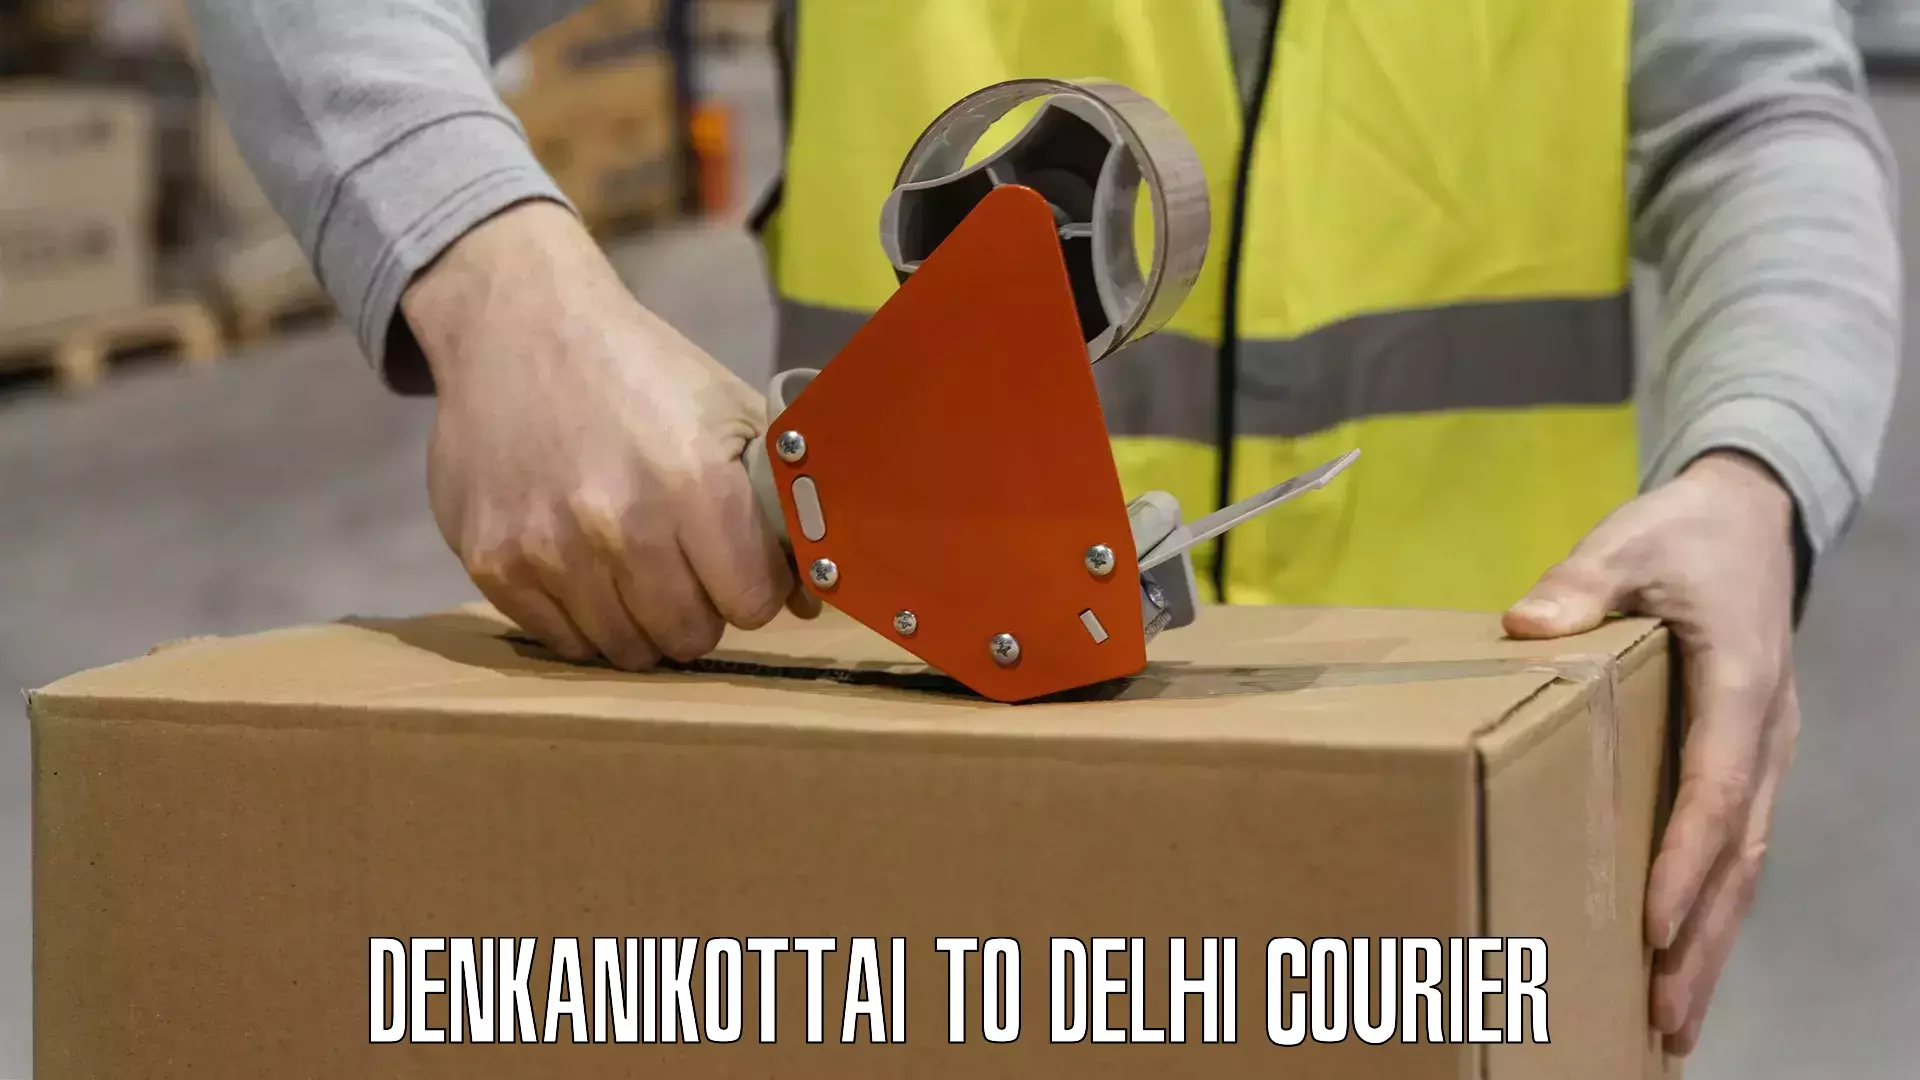 Sustainable shipping practices Denkanikottai to Ashok Vihar